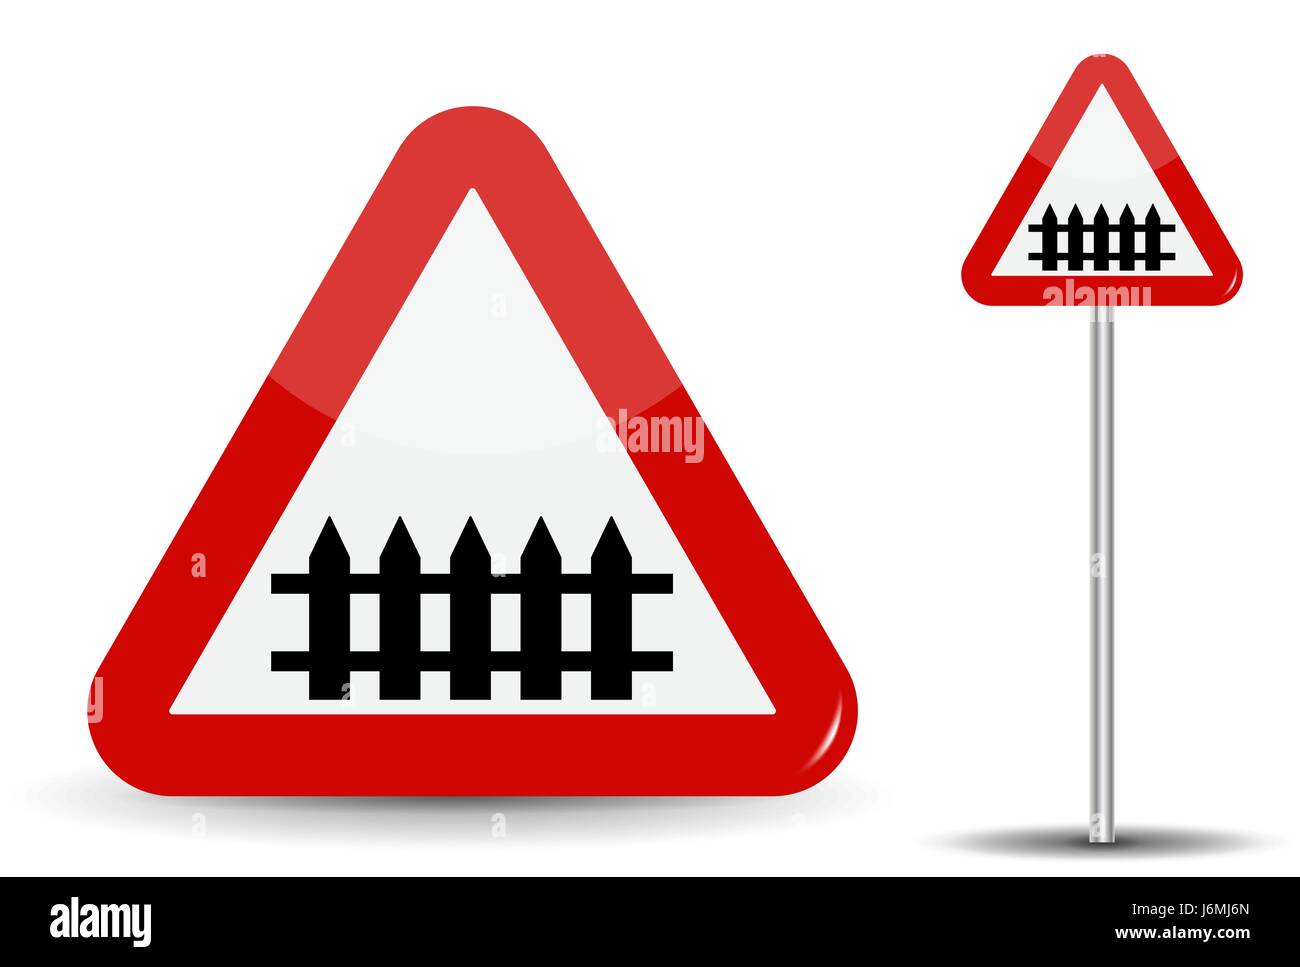 Verkehrszeichen Achtung Bahnübergang. Im roten Dreieck ist Zaun-Barriere  schematisch dargestellt. Vektor-Illustration Stock-Vektorgrafik - Alamy